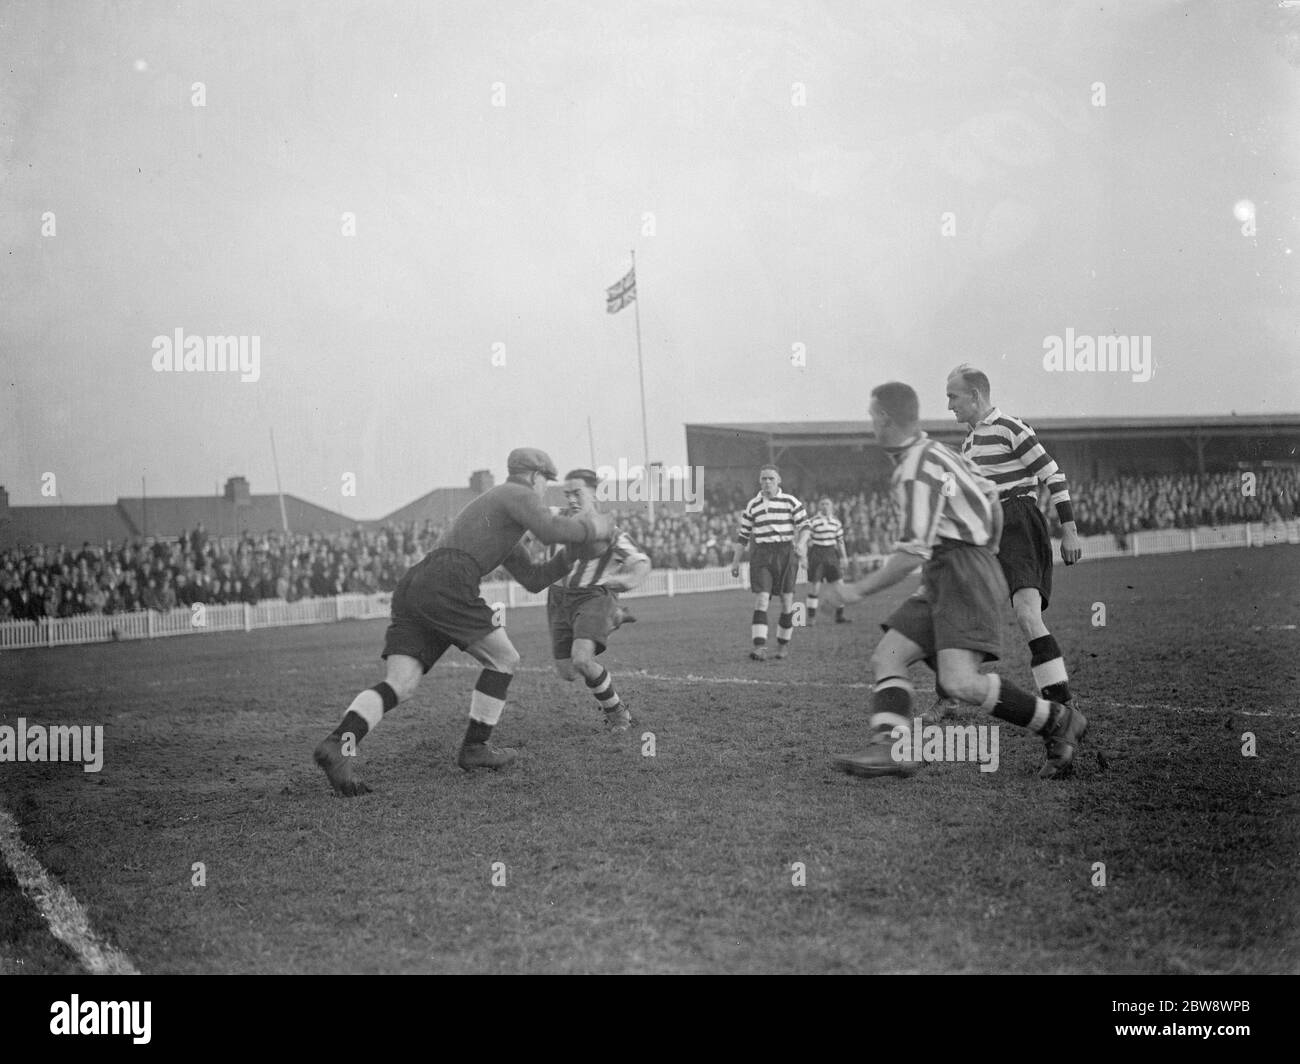 Dartford contra Darlington . Acción frente al objetivo , el portero hace un ahorro . 1937 Foto de stock